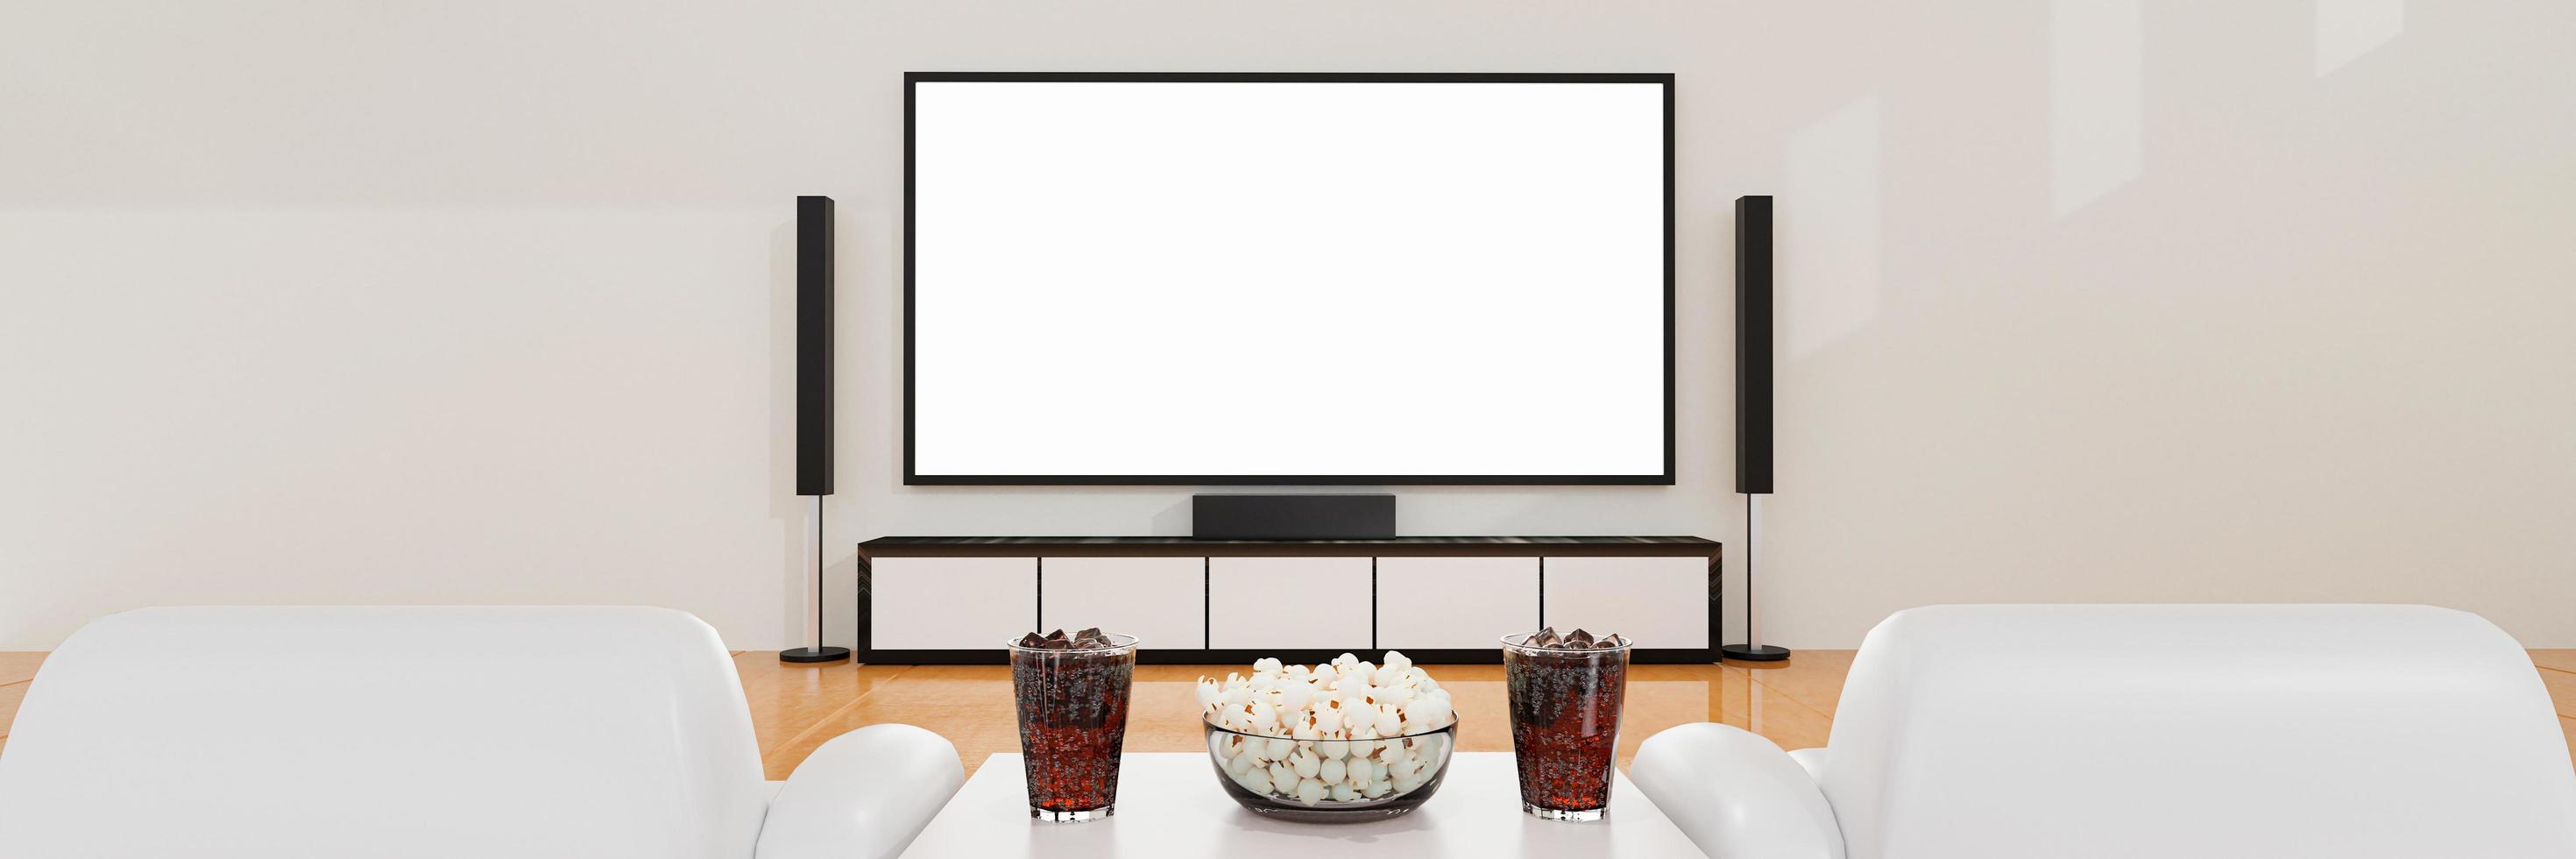 Heimkino an weißer Gipswand. Big Wall Screen TV und Audiogeräte für Mini-Heimkino. weißer Couchtisch auf Holzboden. Cola und Eiswürfel im Klarglas mit Popcorn. 3D-Rendering. foto